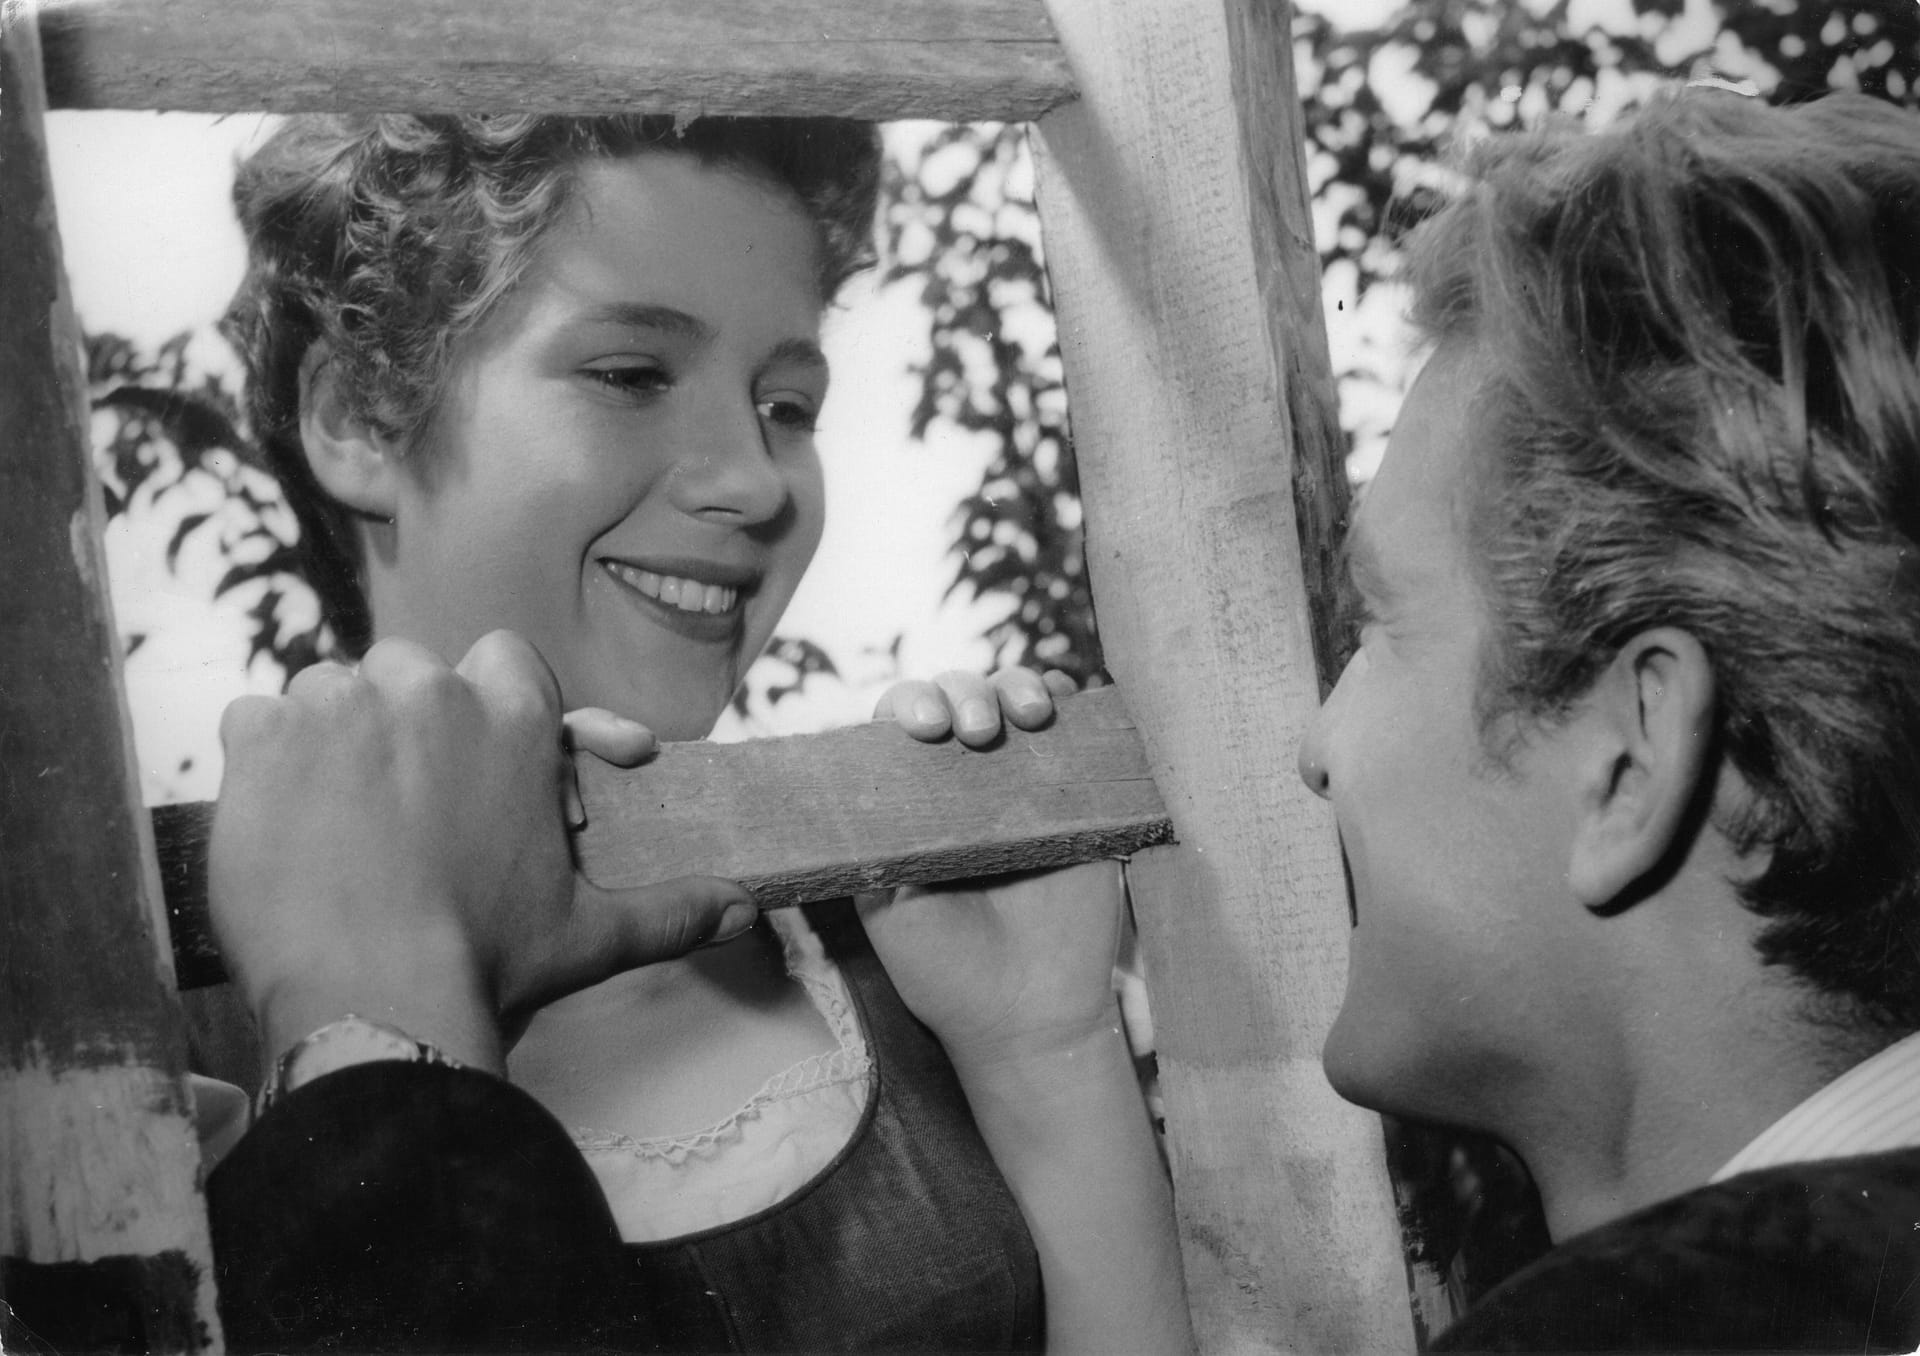 Das war ihr Debüt: Christiane Hoerbiger mit Schauspielkollege Hans von Borsody in einer Szene des Films "Der Major und die Stiere" von 1955.